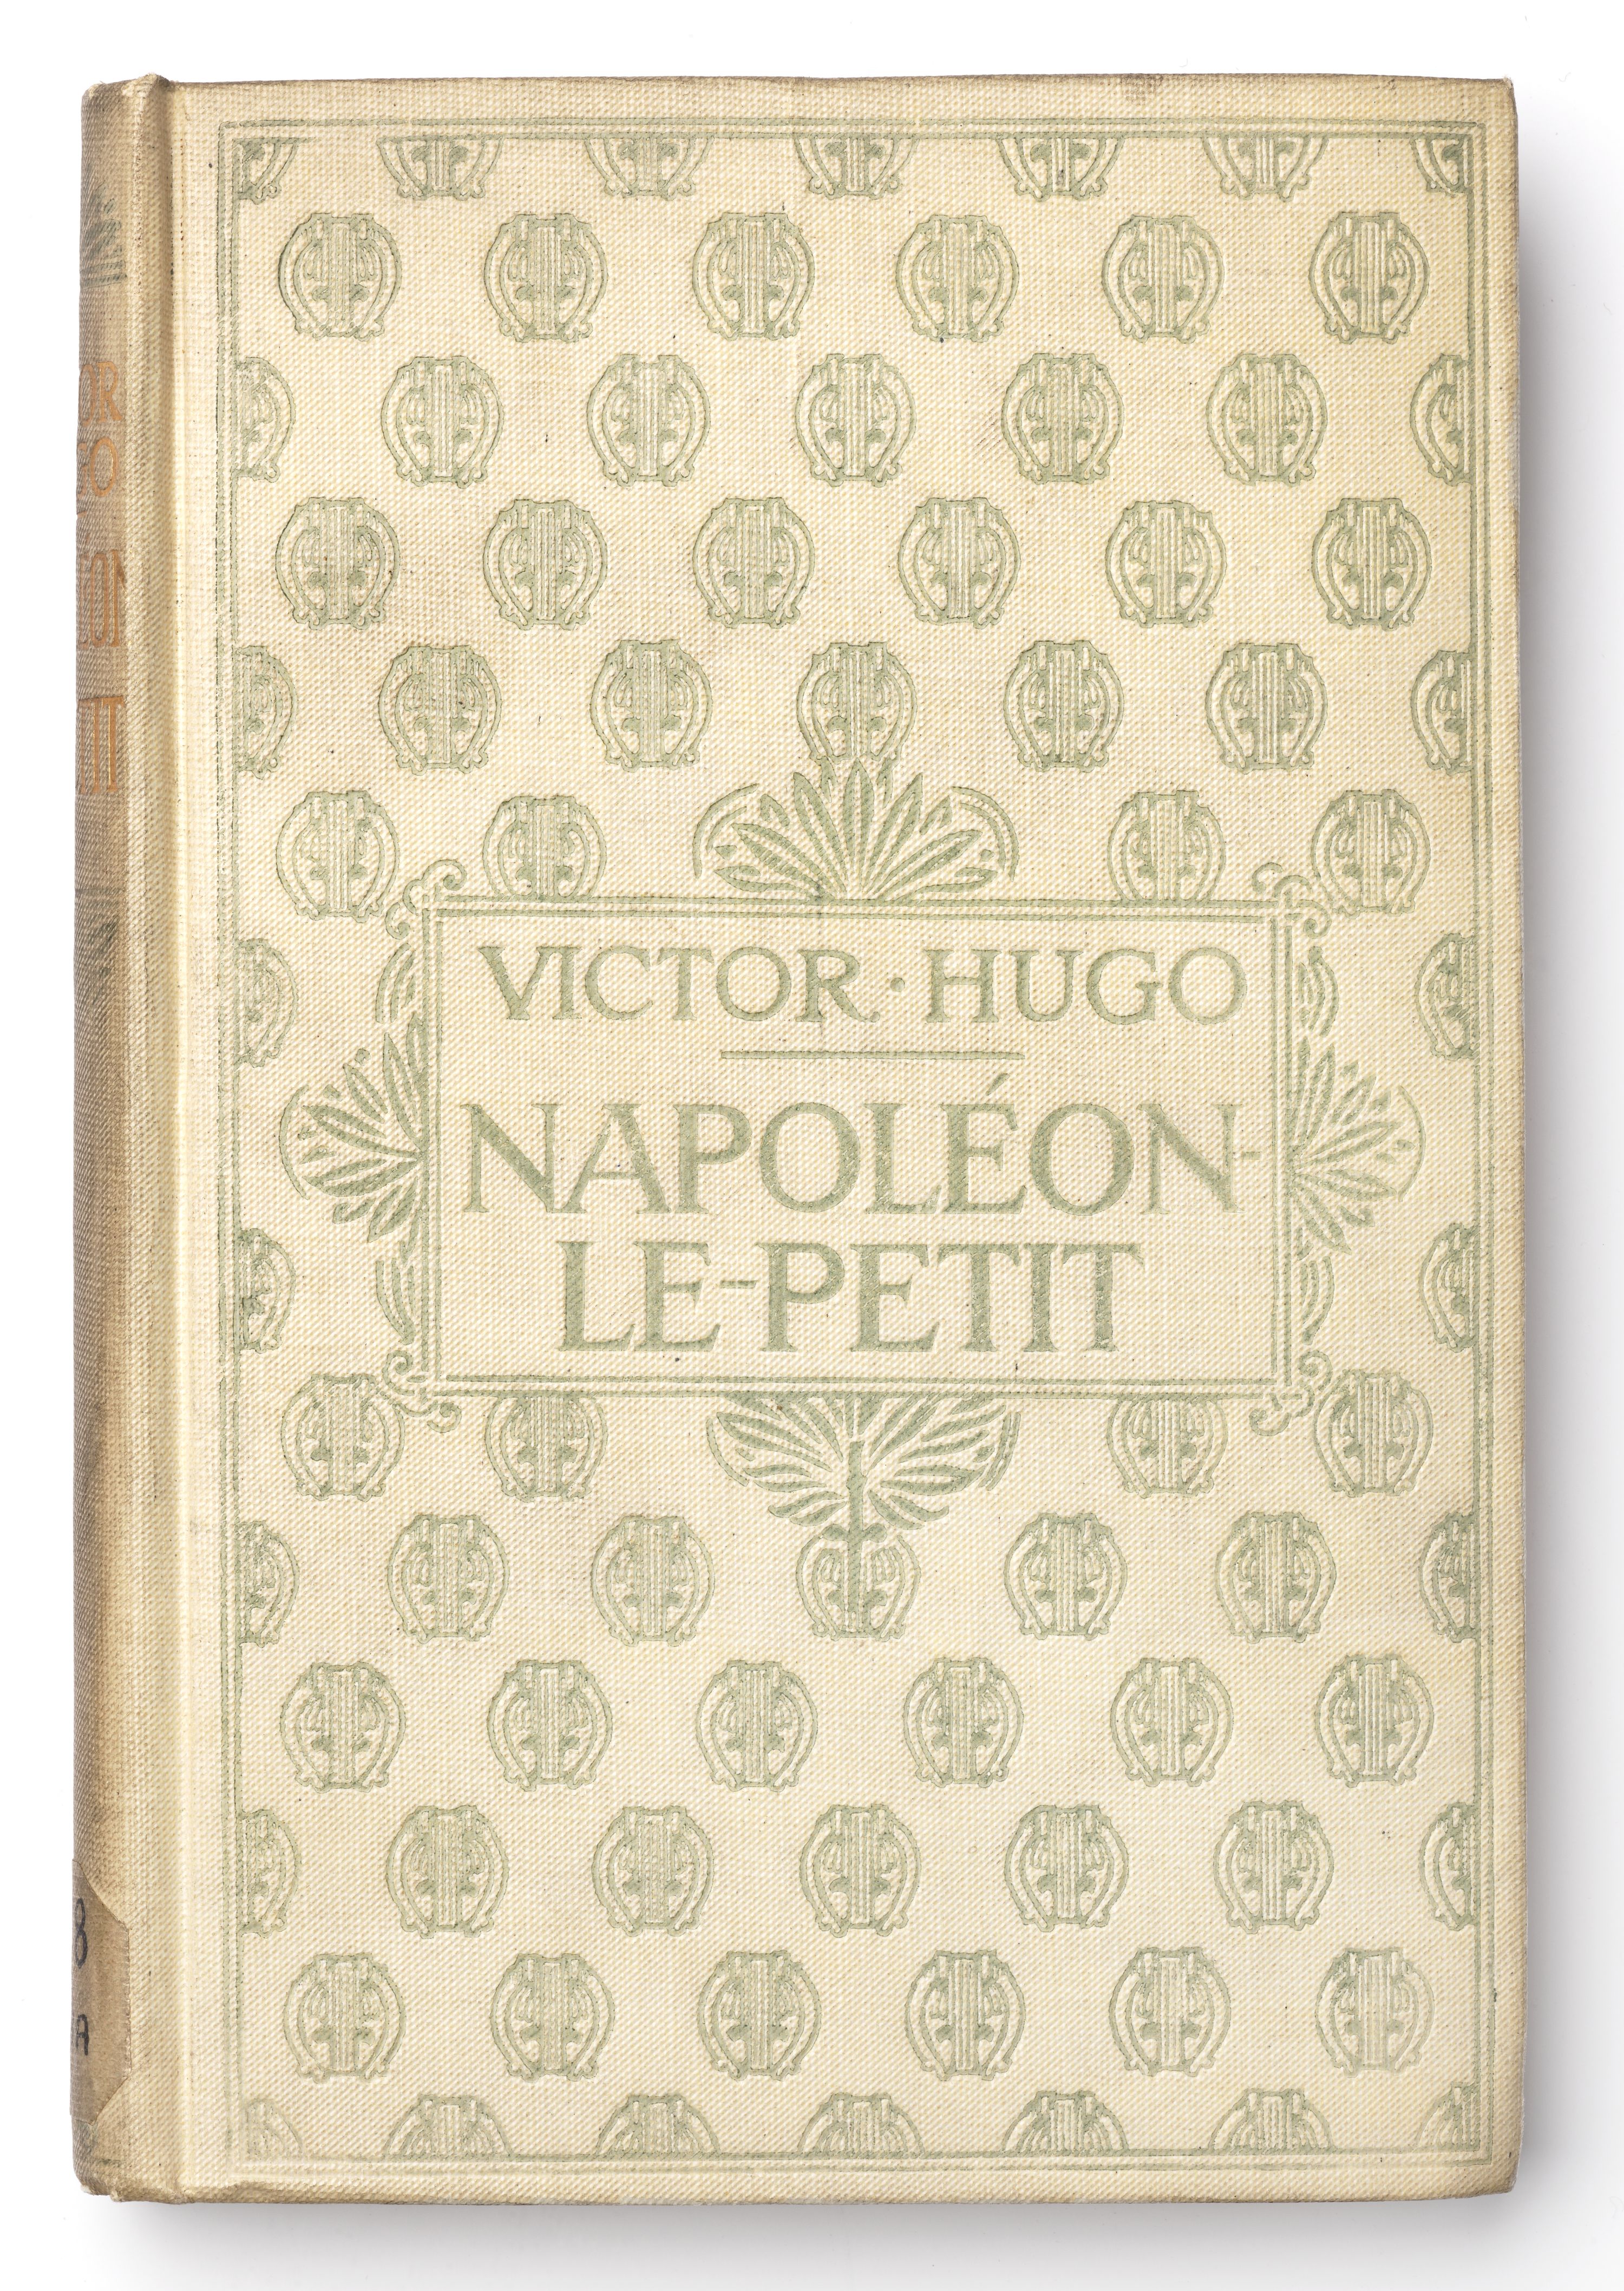 Couverture de la première édition de Napoléon-le-Petit, un pamphlet politique de Victor Hugo contre Napoléon III 